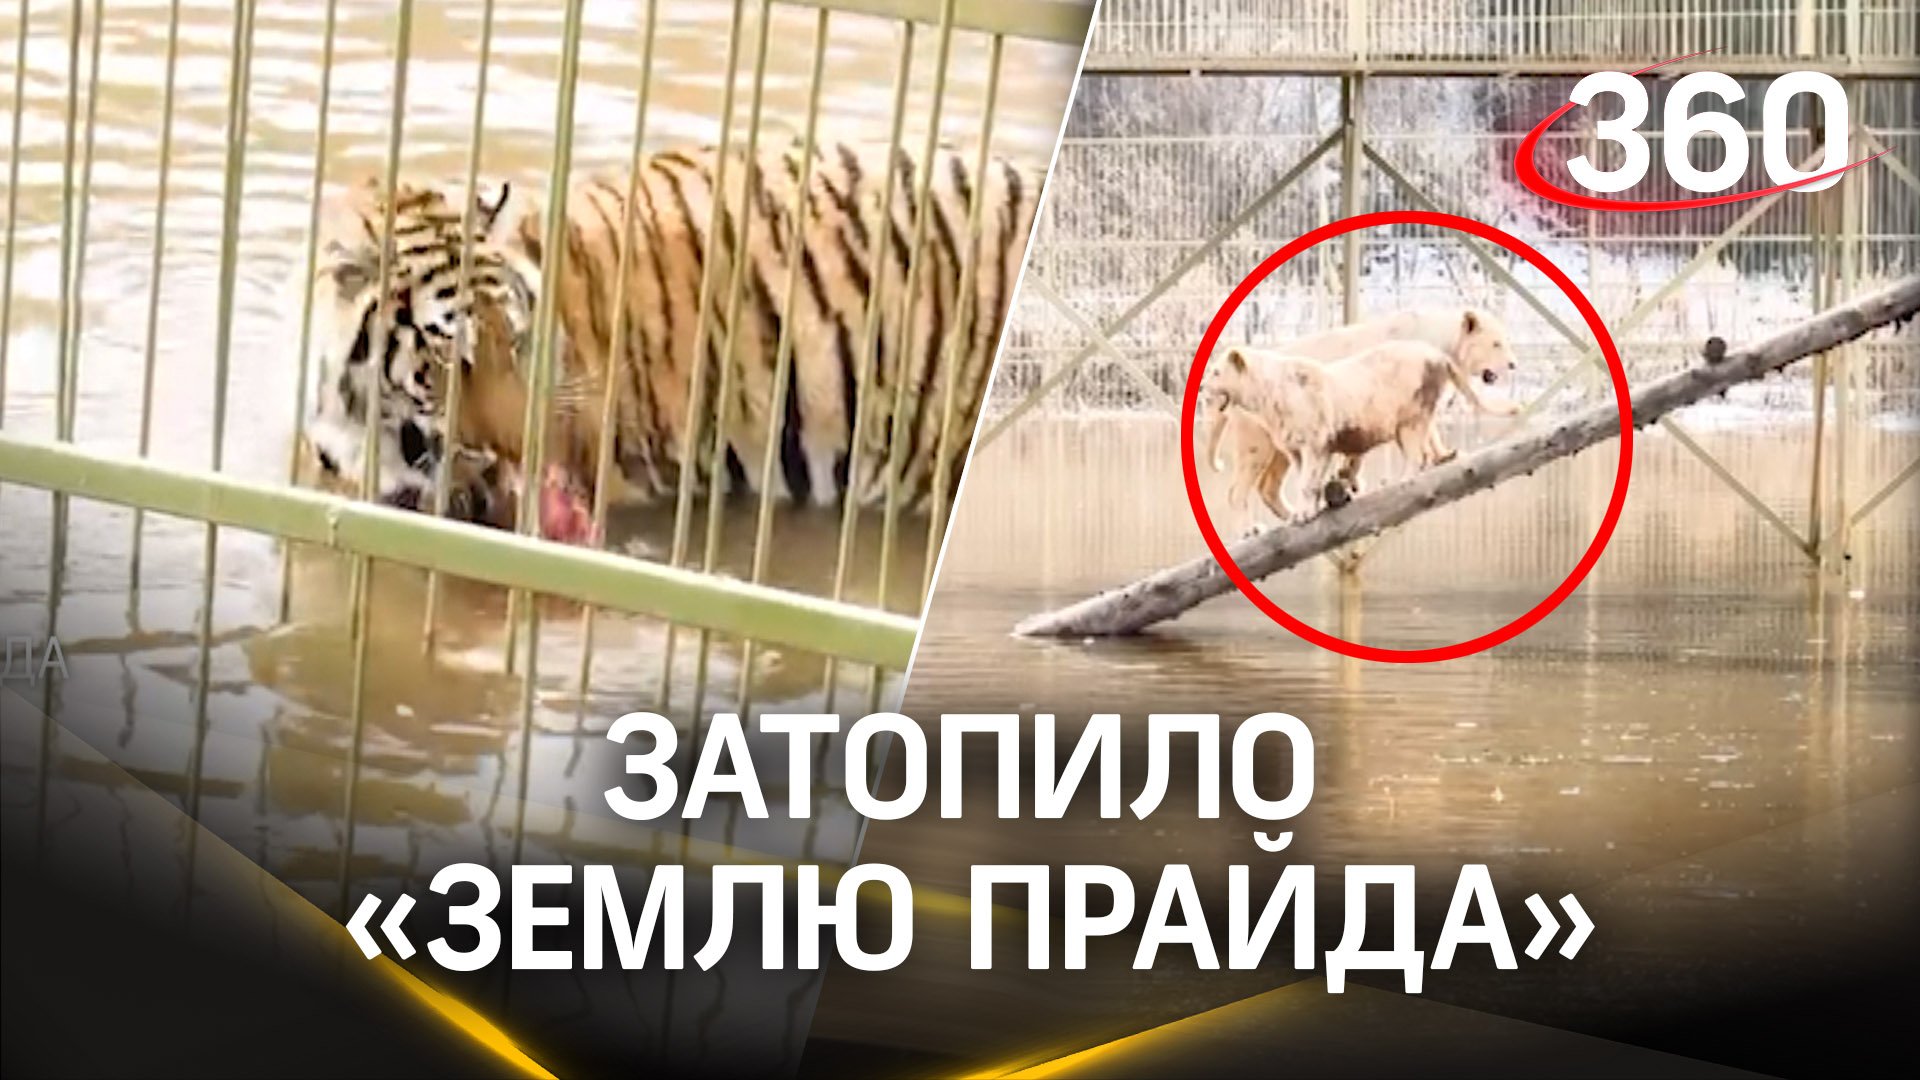 Аква-сафари-парк под водой: тигры и львы в «Земле прайда» спасаются вплавь